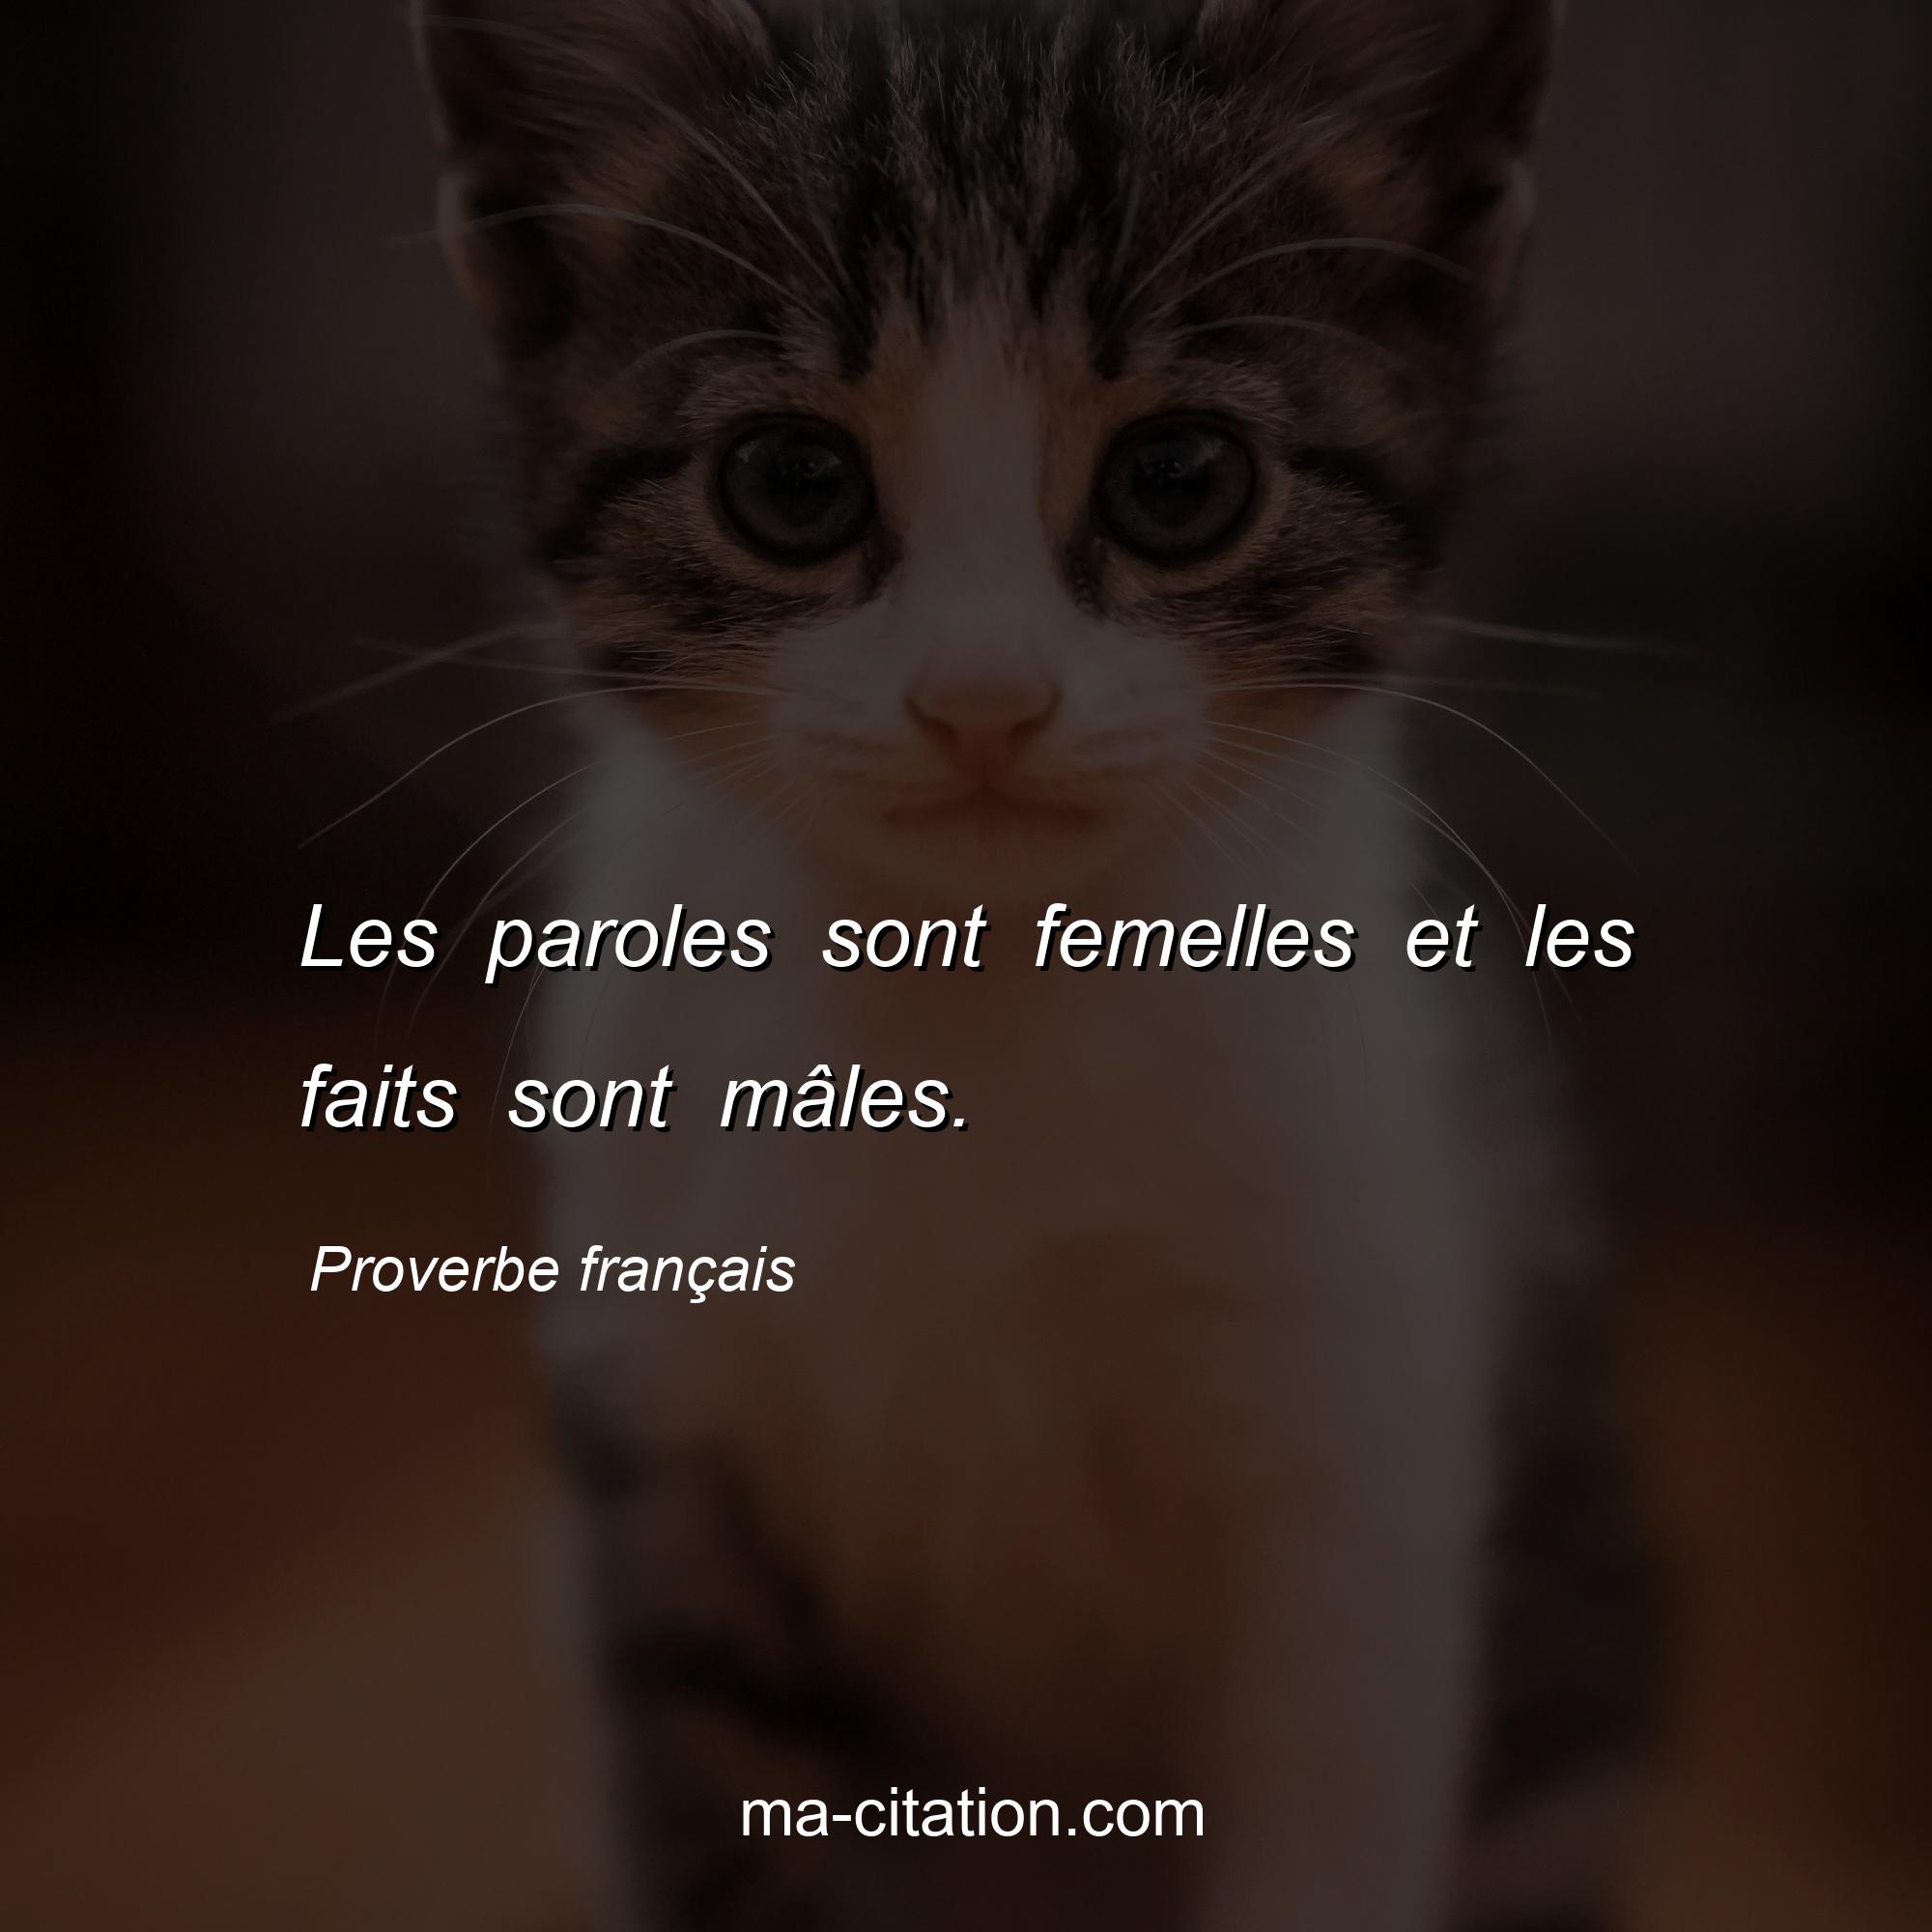 Proverbe français : Les paroles sont femelles et les faits sont mâles.